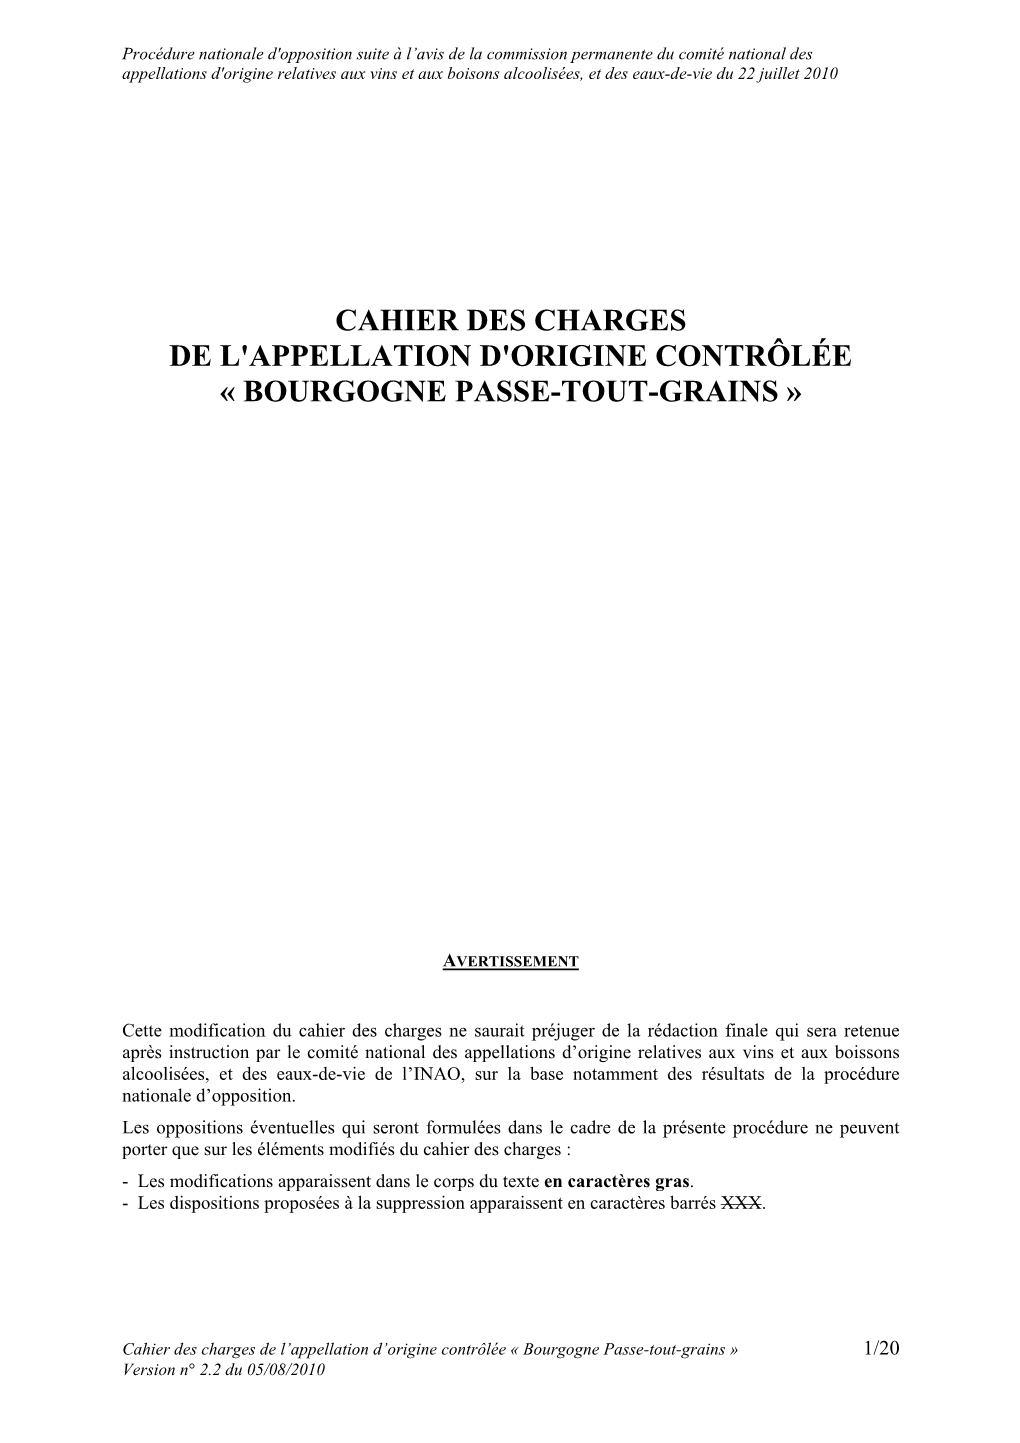 Cahier Des Charges De L'appellation D'origine Contrôlée « Bourgogne Passe-Tout-Grains »